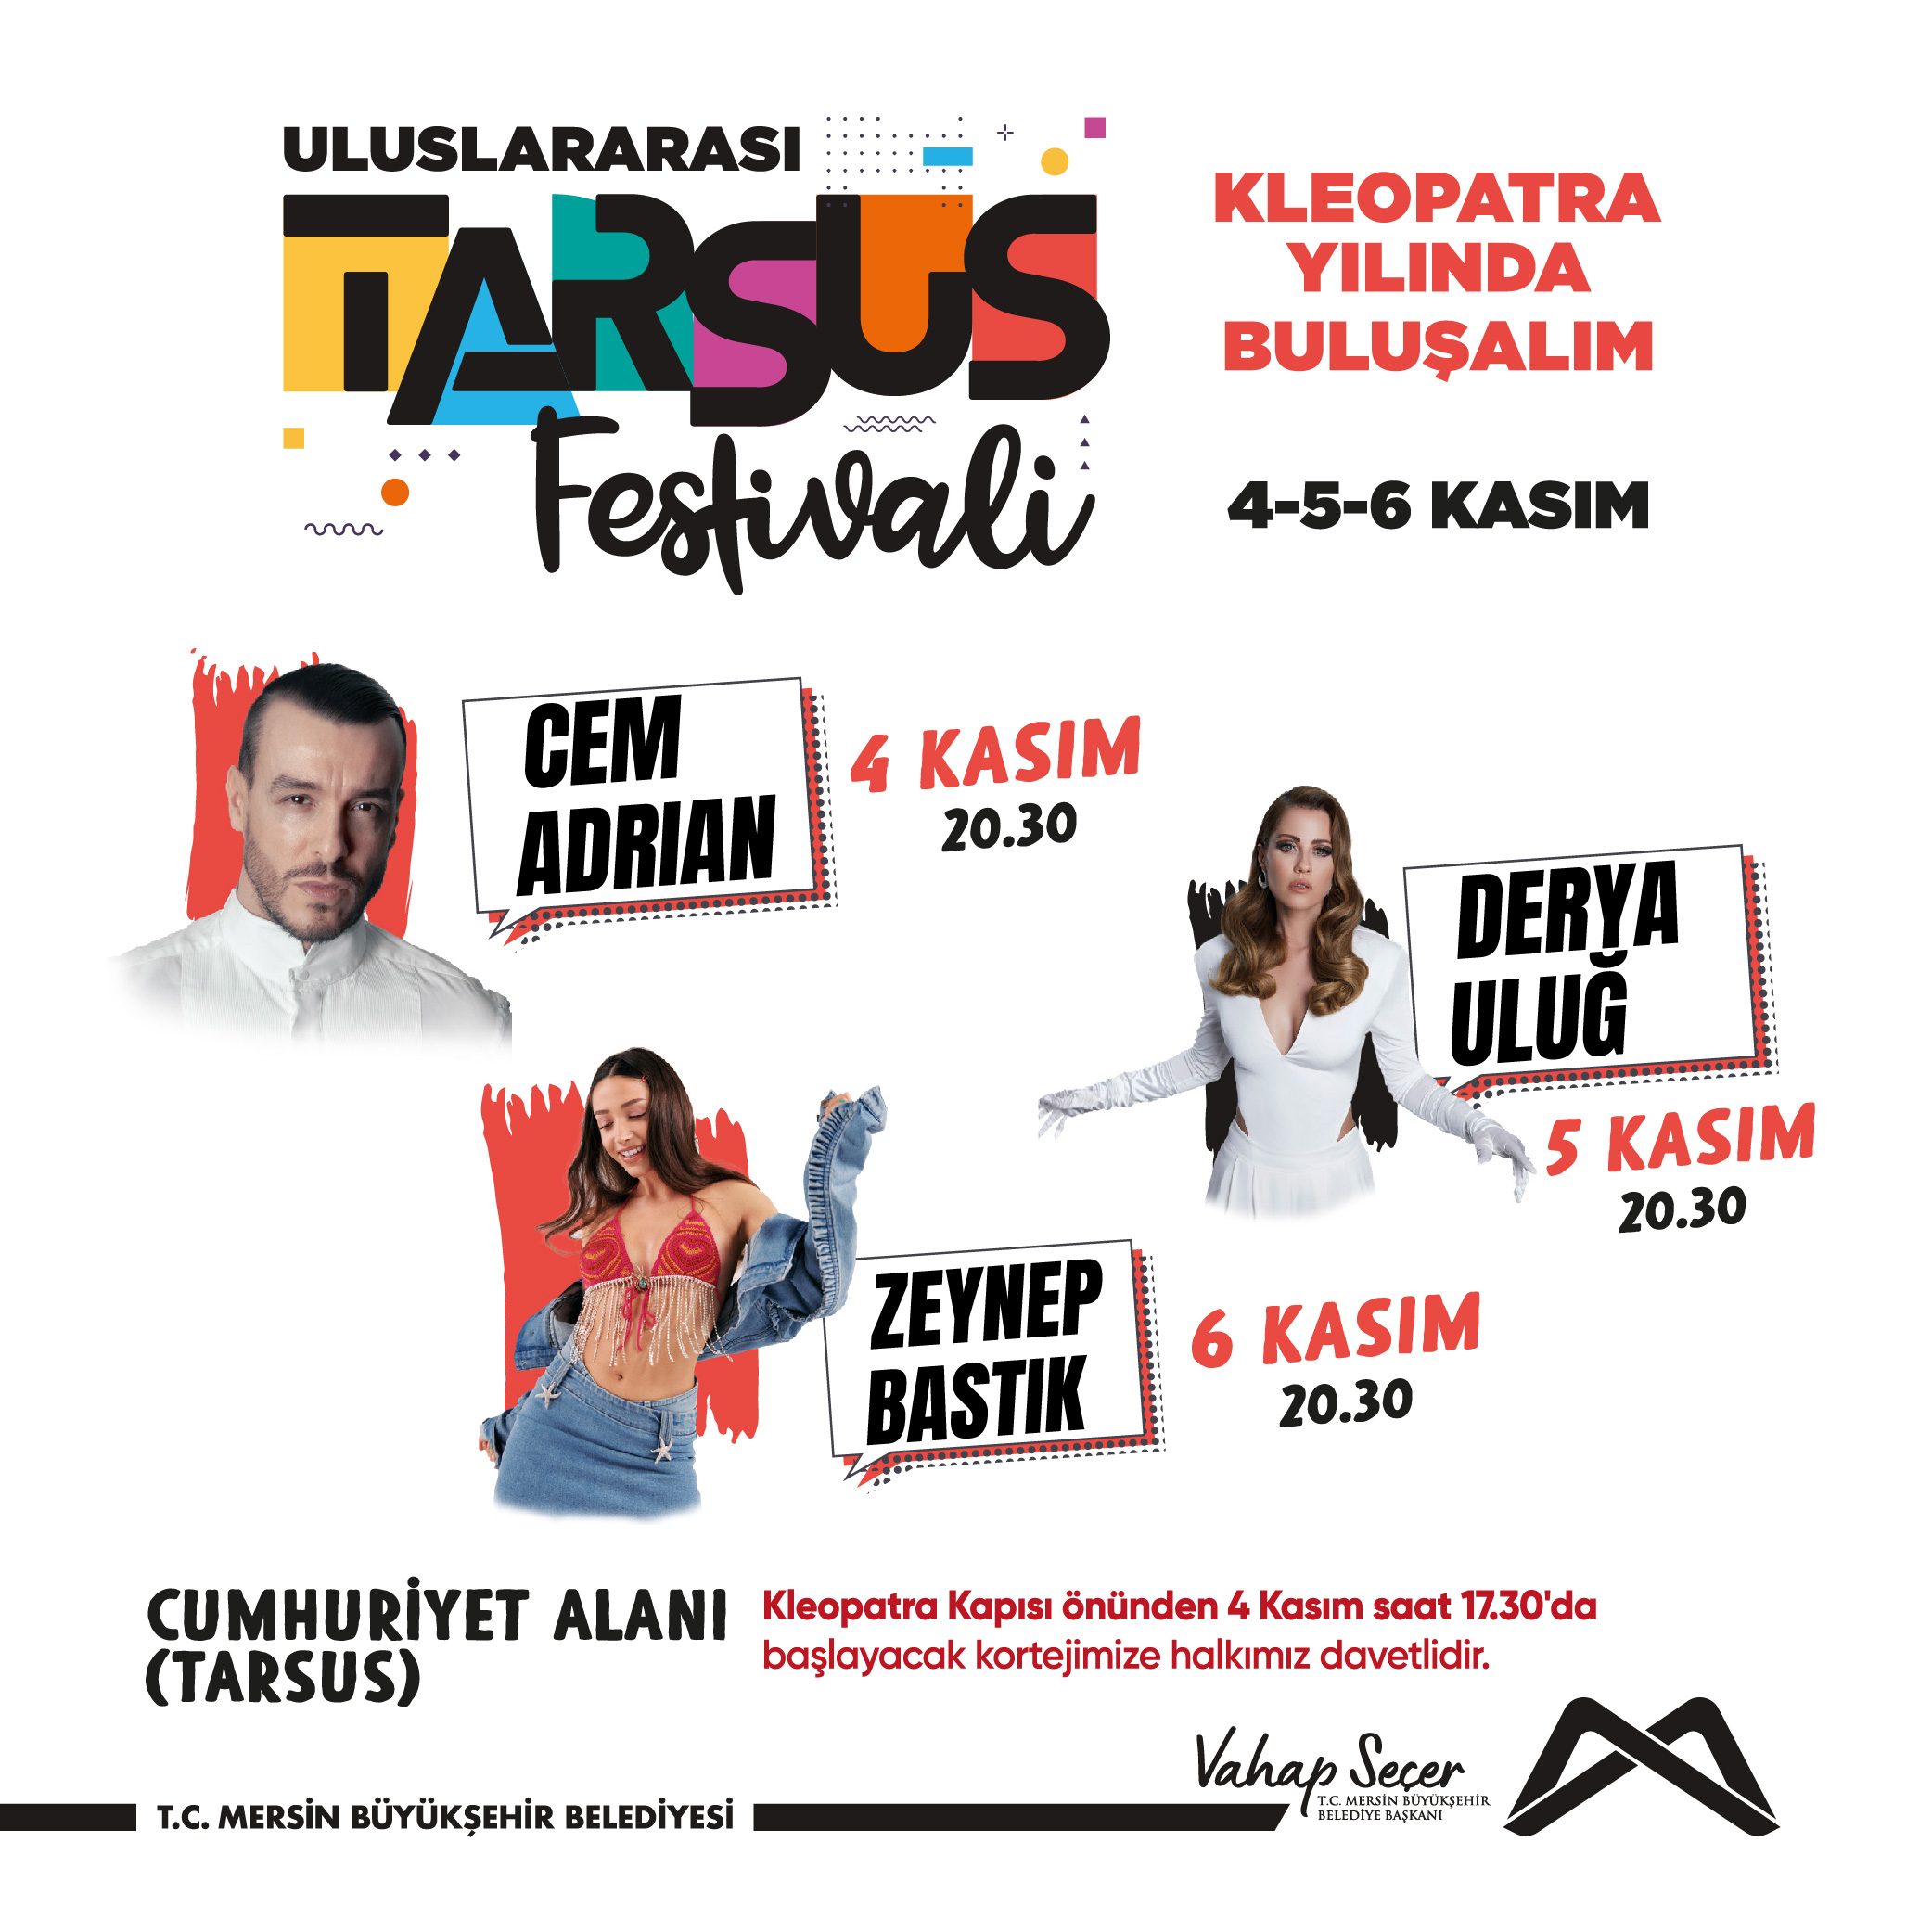 Uluslararası Tarsus Festivali konser takvimi